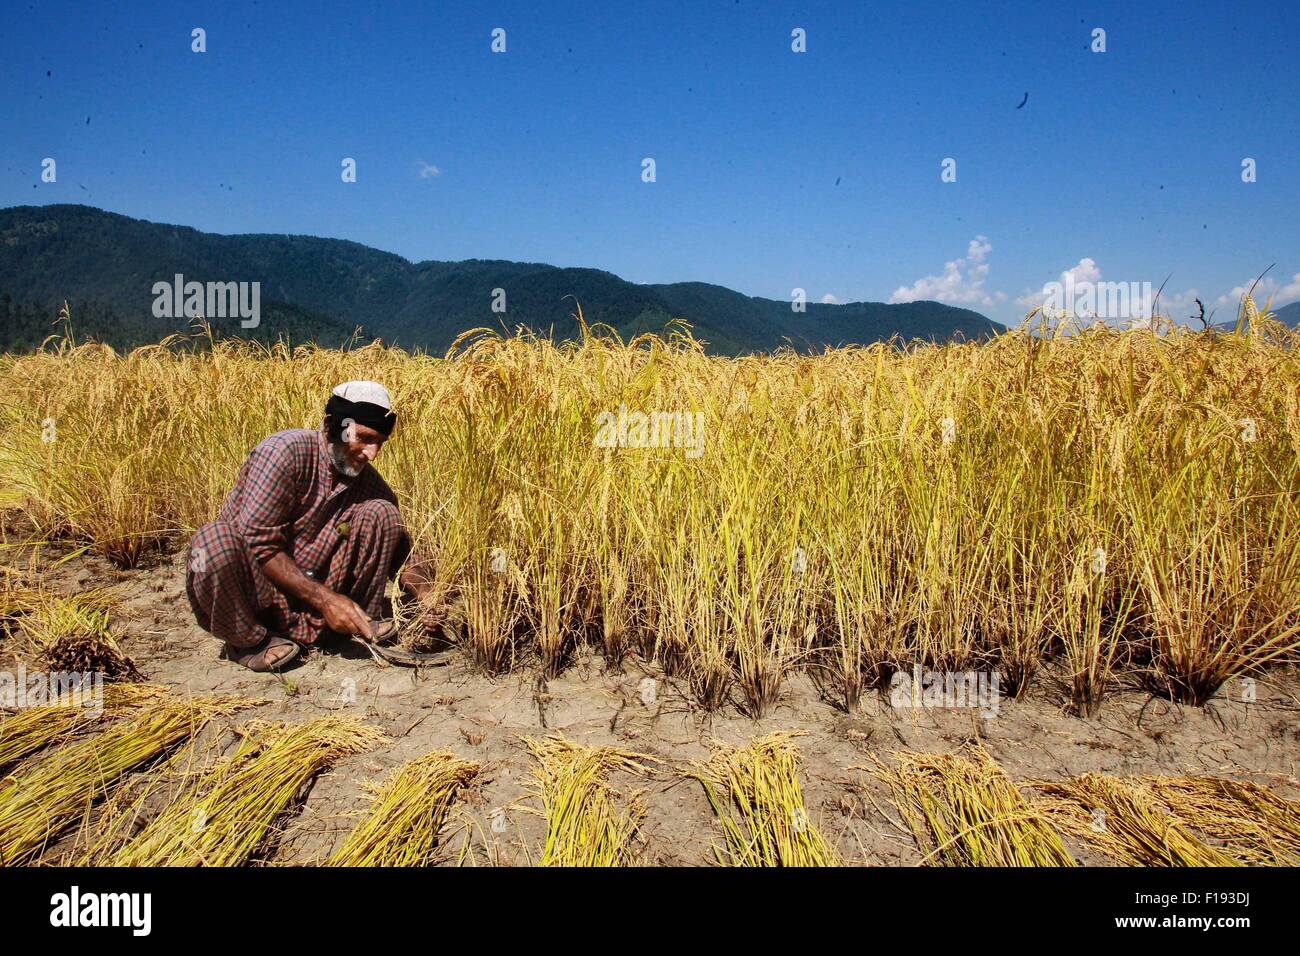 Srinagar, Indiano-controllato del Kashmir. Il 30 agosto, 2015. Un agricoltore del Kashmir miete paddy in un campo al villaggio Dewar in Lolab area del distretto di Kupwara, circa 115 km a nord di Srinagar, capitale estiva di Indiano-Kashmir controllato, il 30 agosto 2015. Paddy stagione di raccolto ha iniziato in indiano-Kashmir controllata. Il riso è l'alimento base della valle del Kashmir. Credito: Javed Dar/Xinhua/Alamy Live News Foto Stock